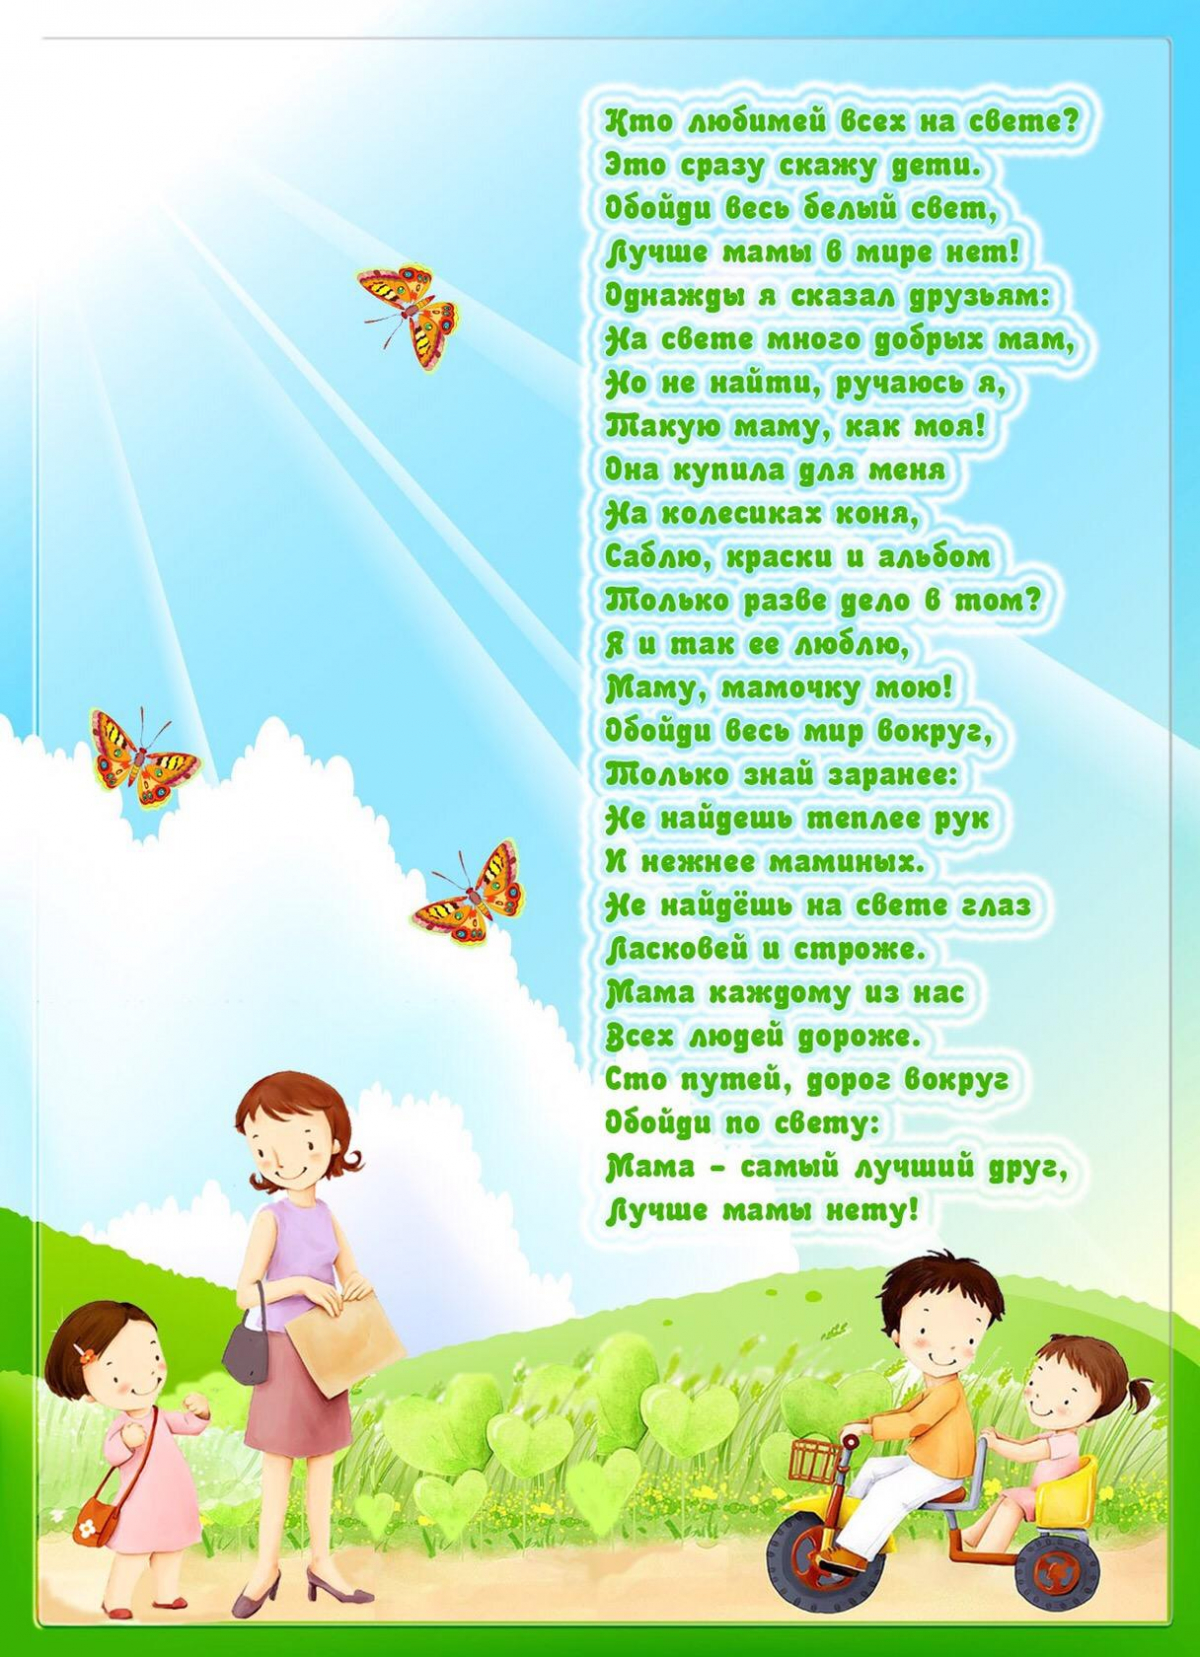 Стихи о семье к году семьи. День семьи 15 мая. День семьи информация. Международный день семьи стихи. Стихи к Дню семьи для детского сада.